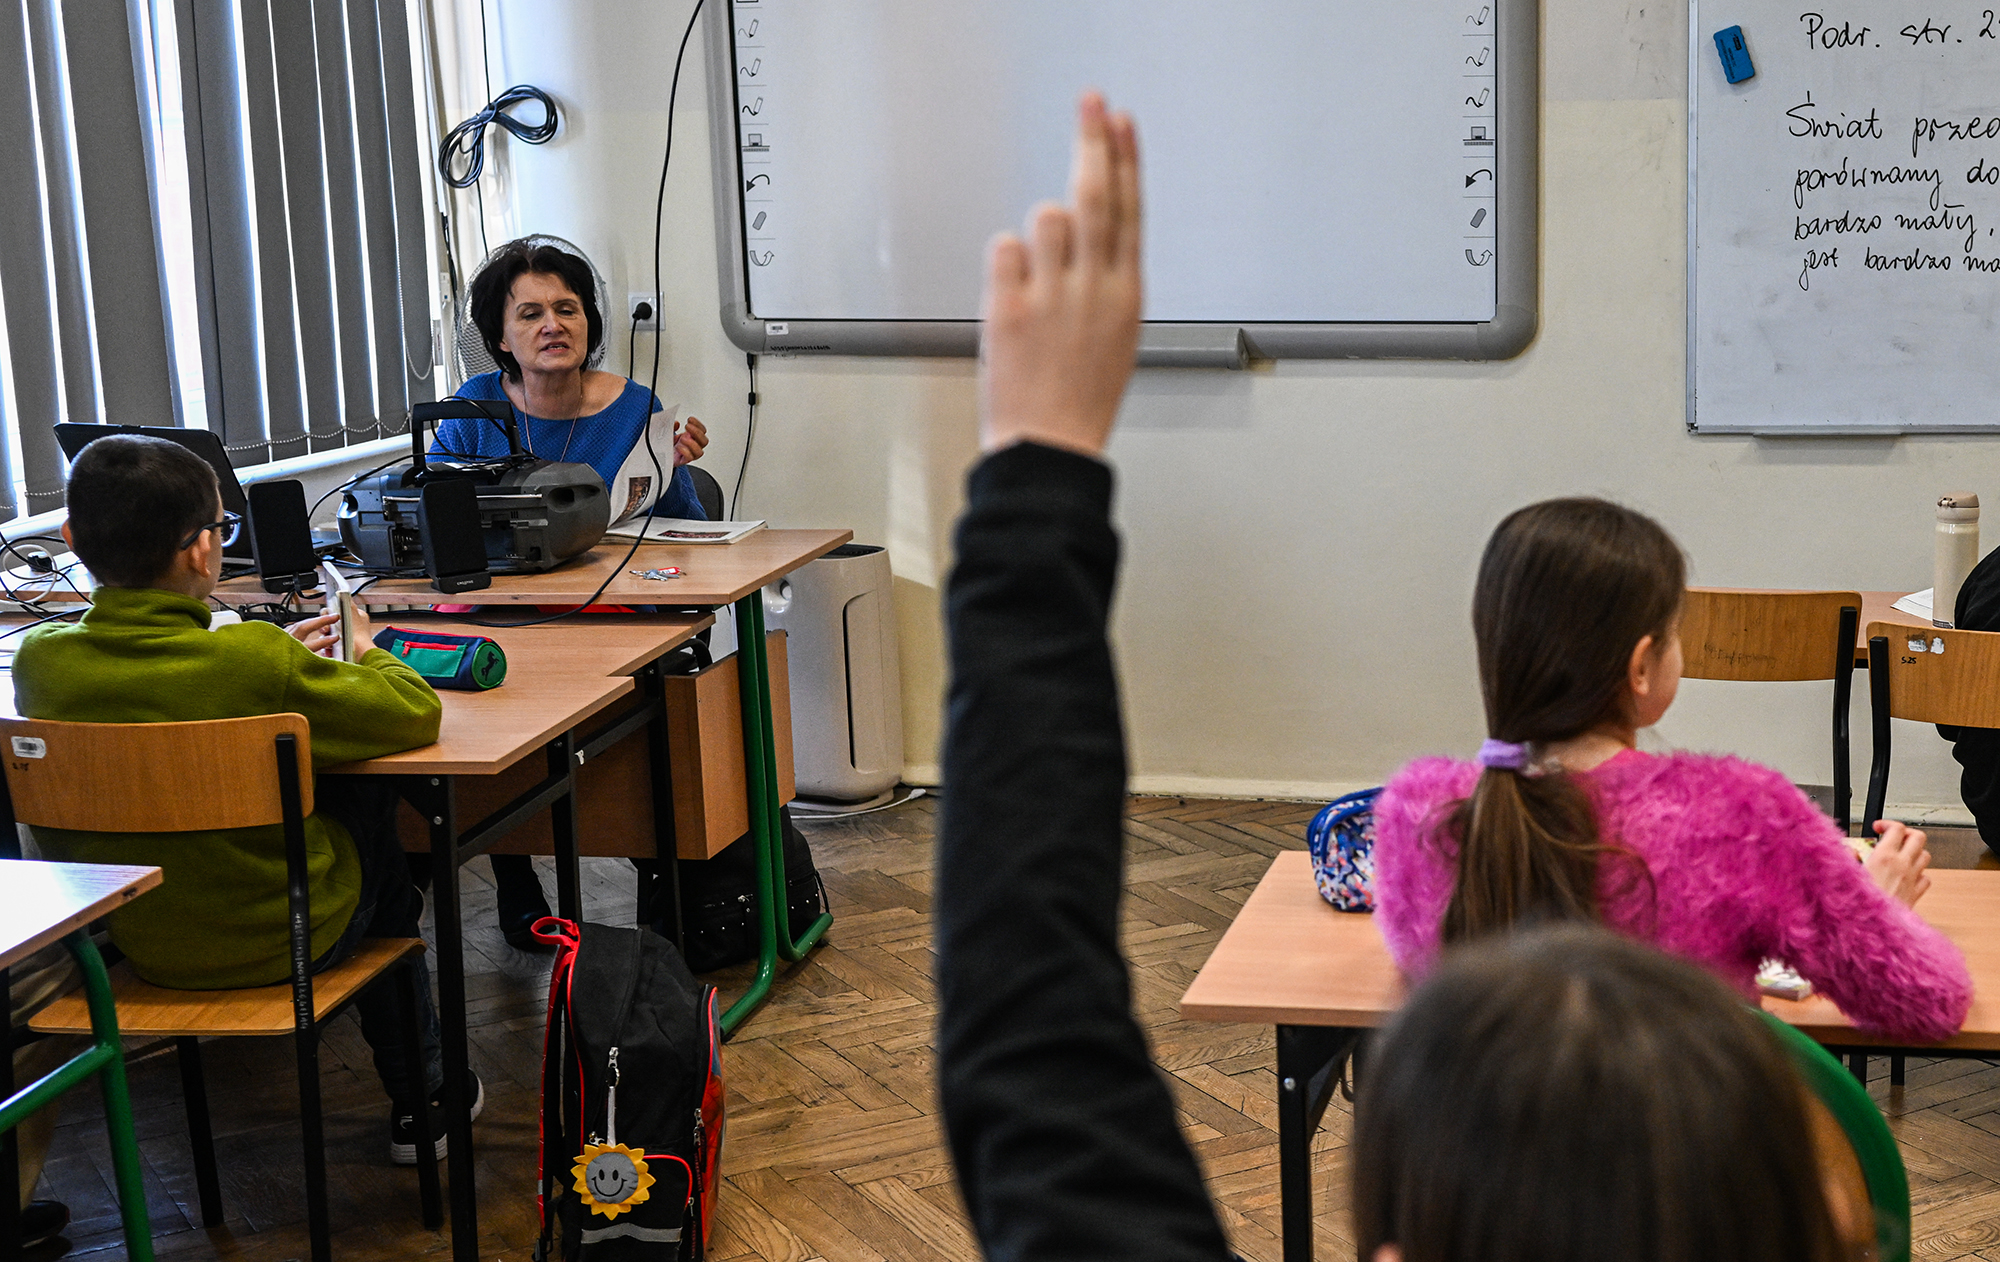 Выплаты и школа. Какие будут новые правила для украинских беженцев в Польше